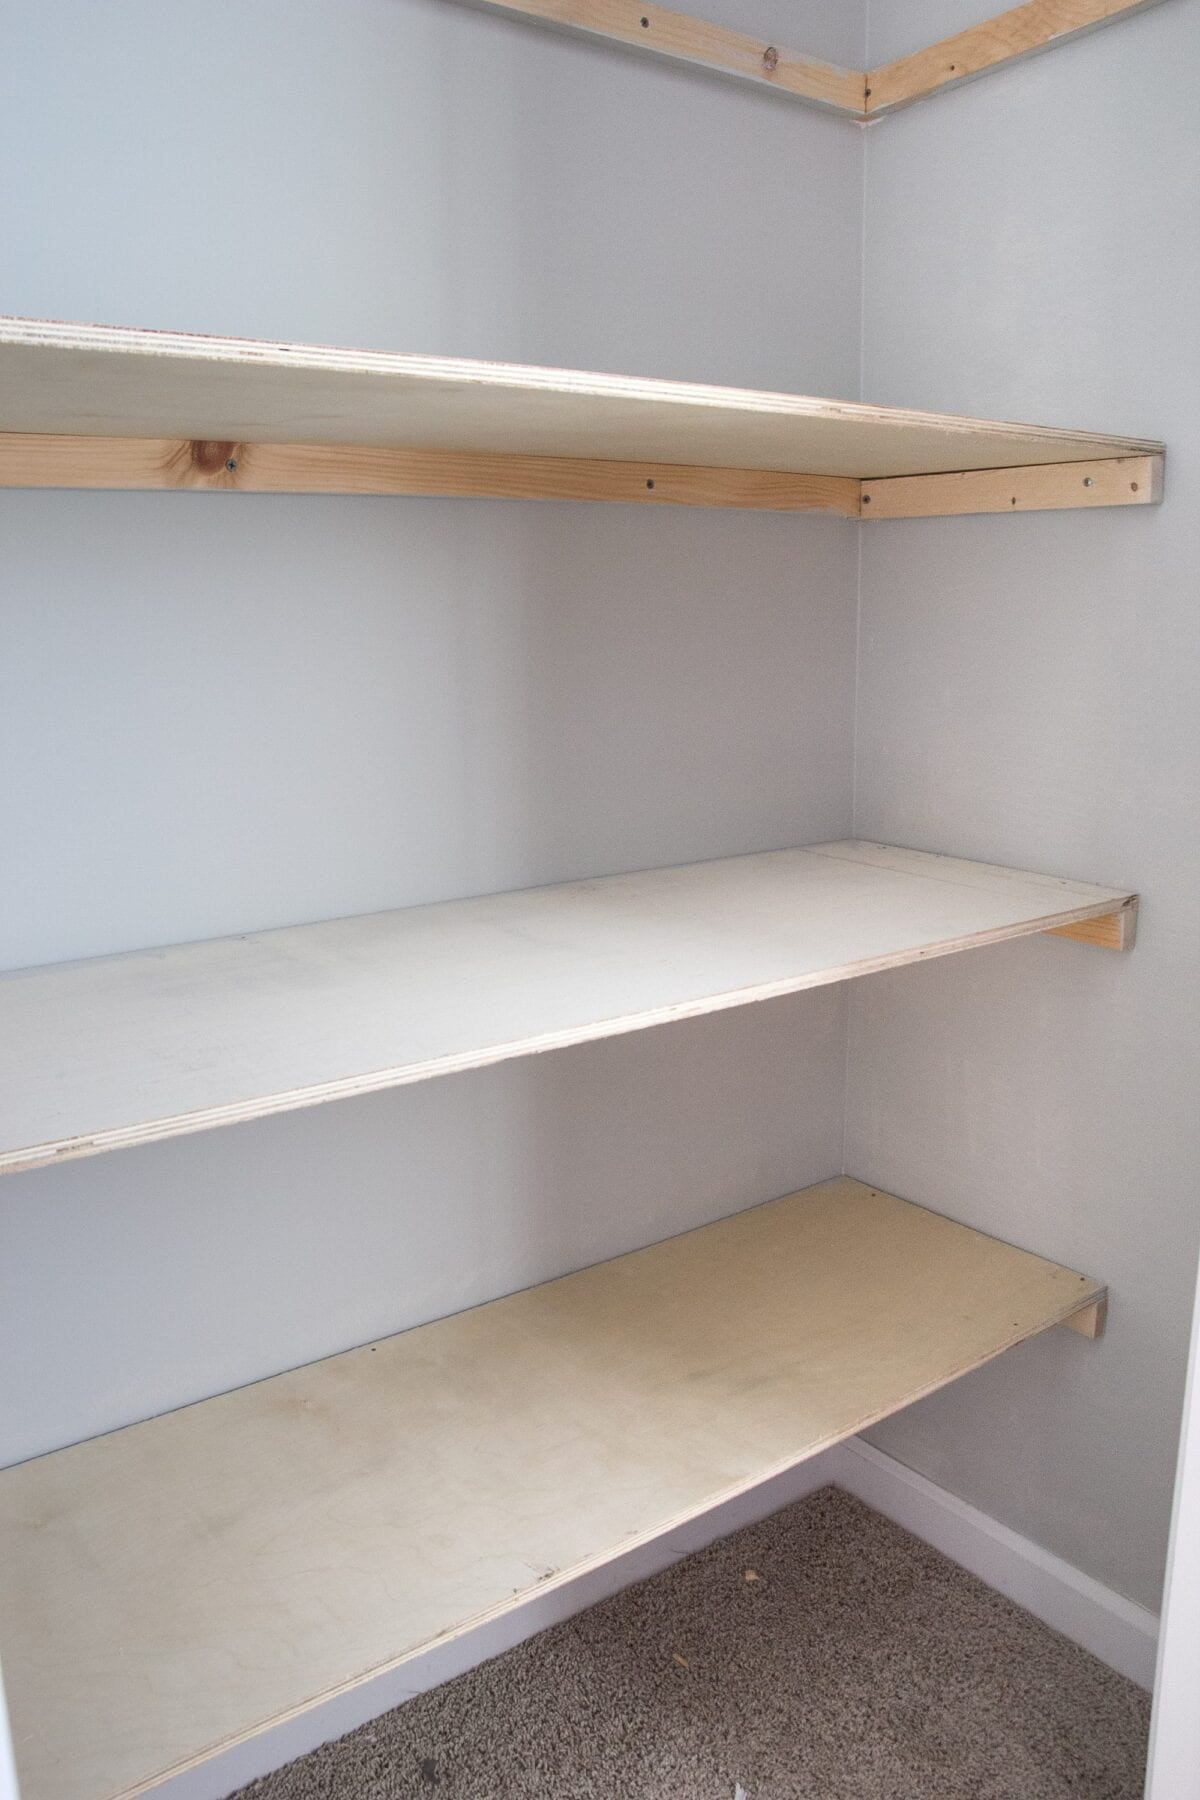 Diy Closet Shelves Plans New Basic Diy Closet Shelving